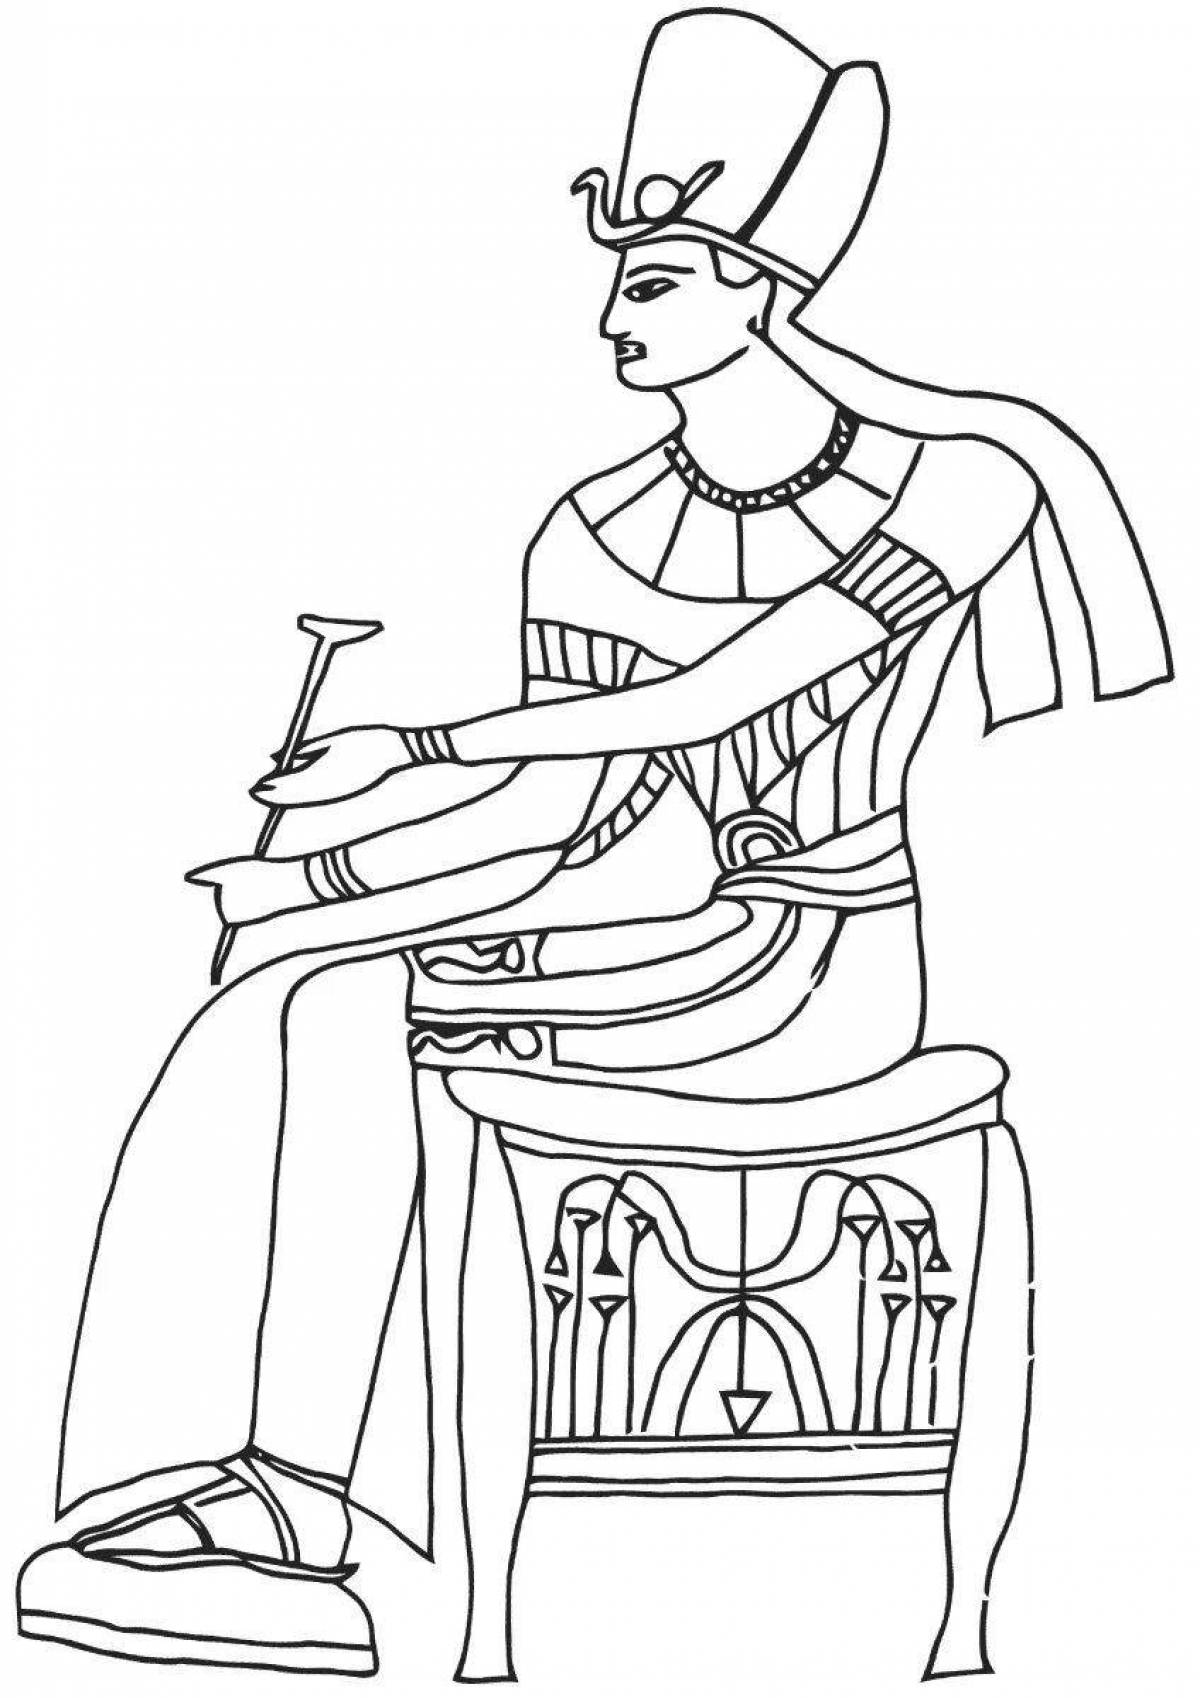 Раскраска царственный фараон